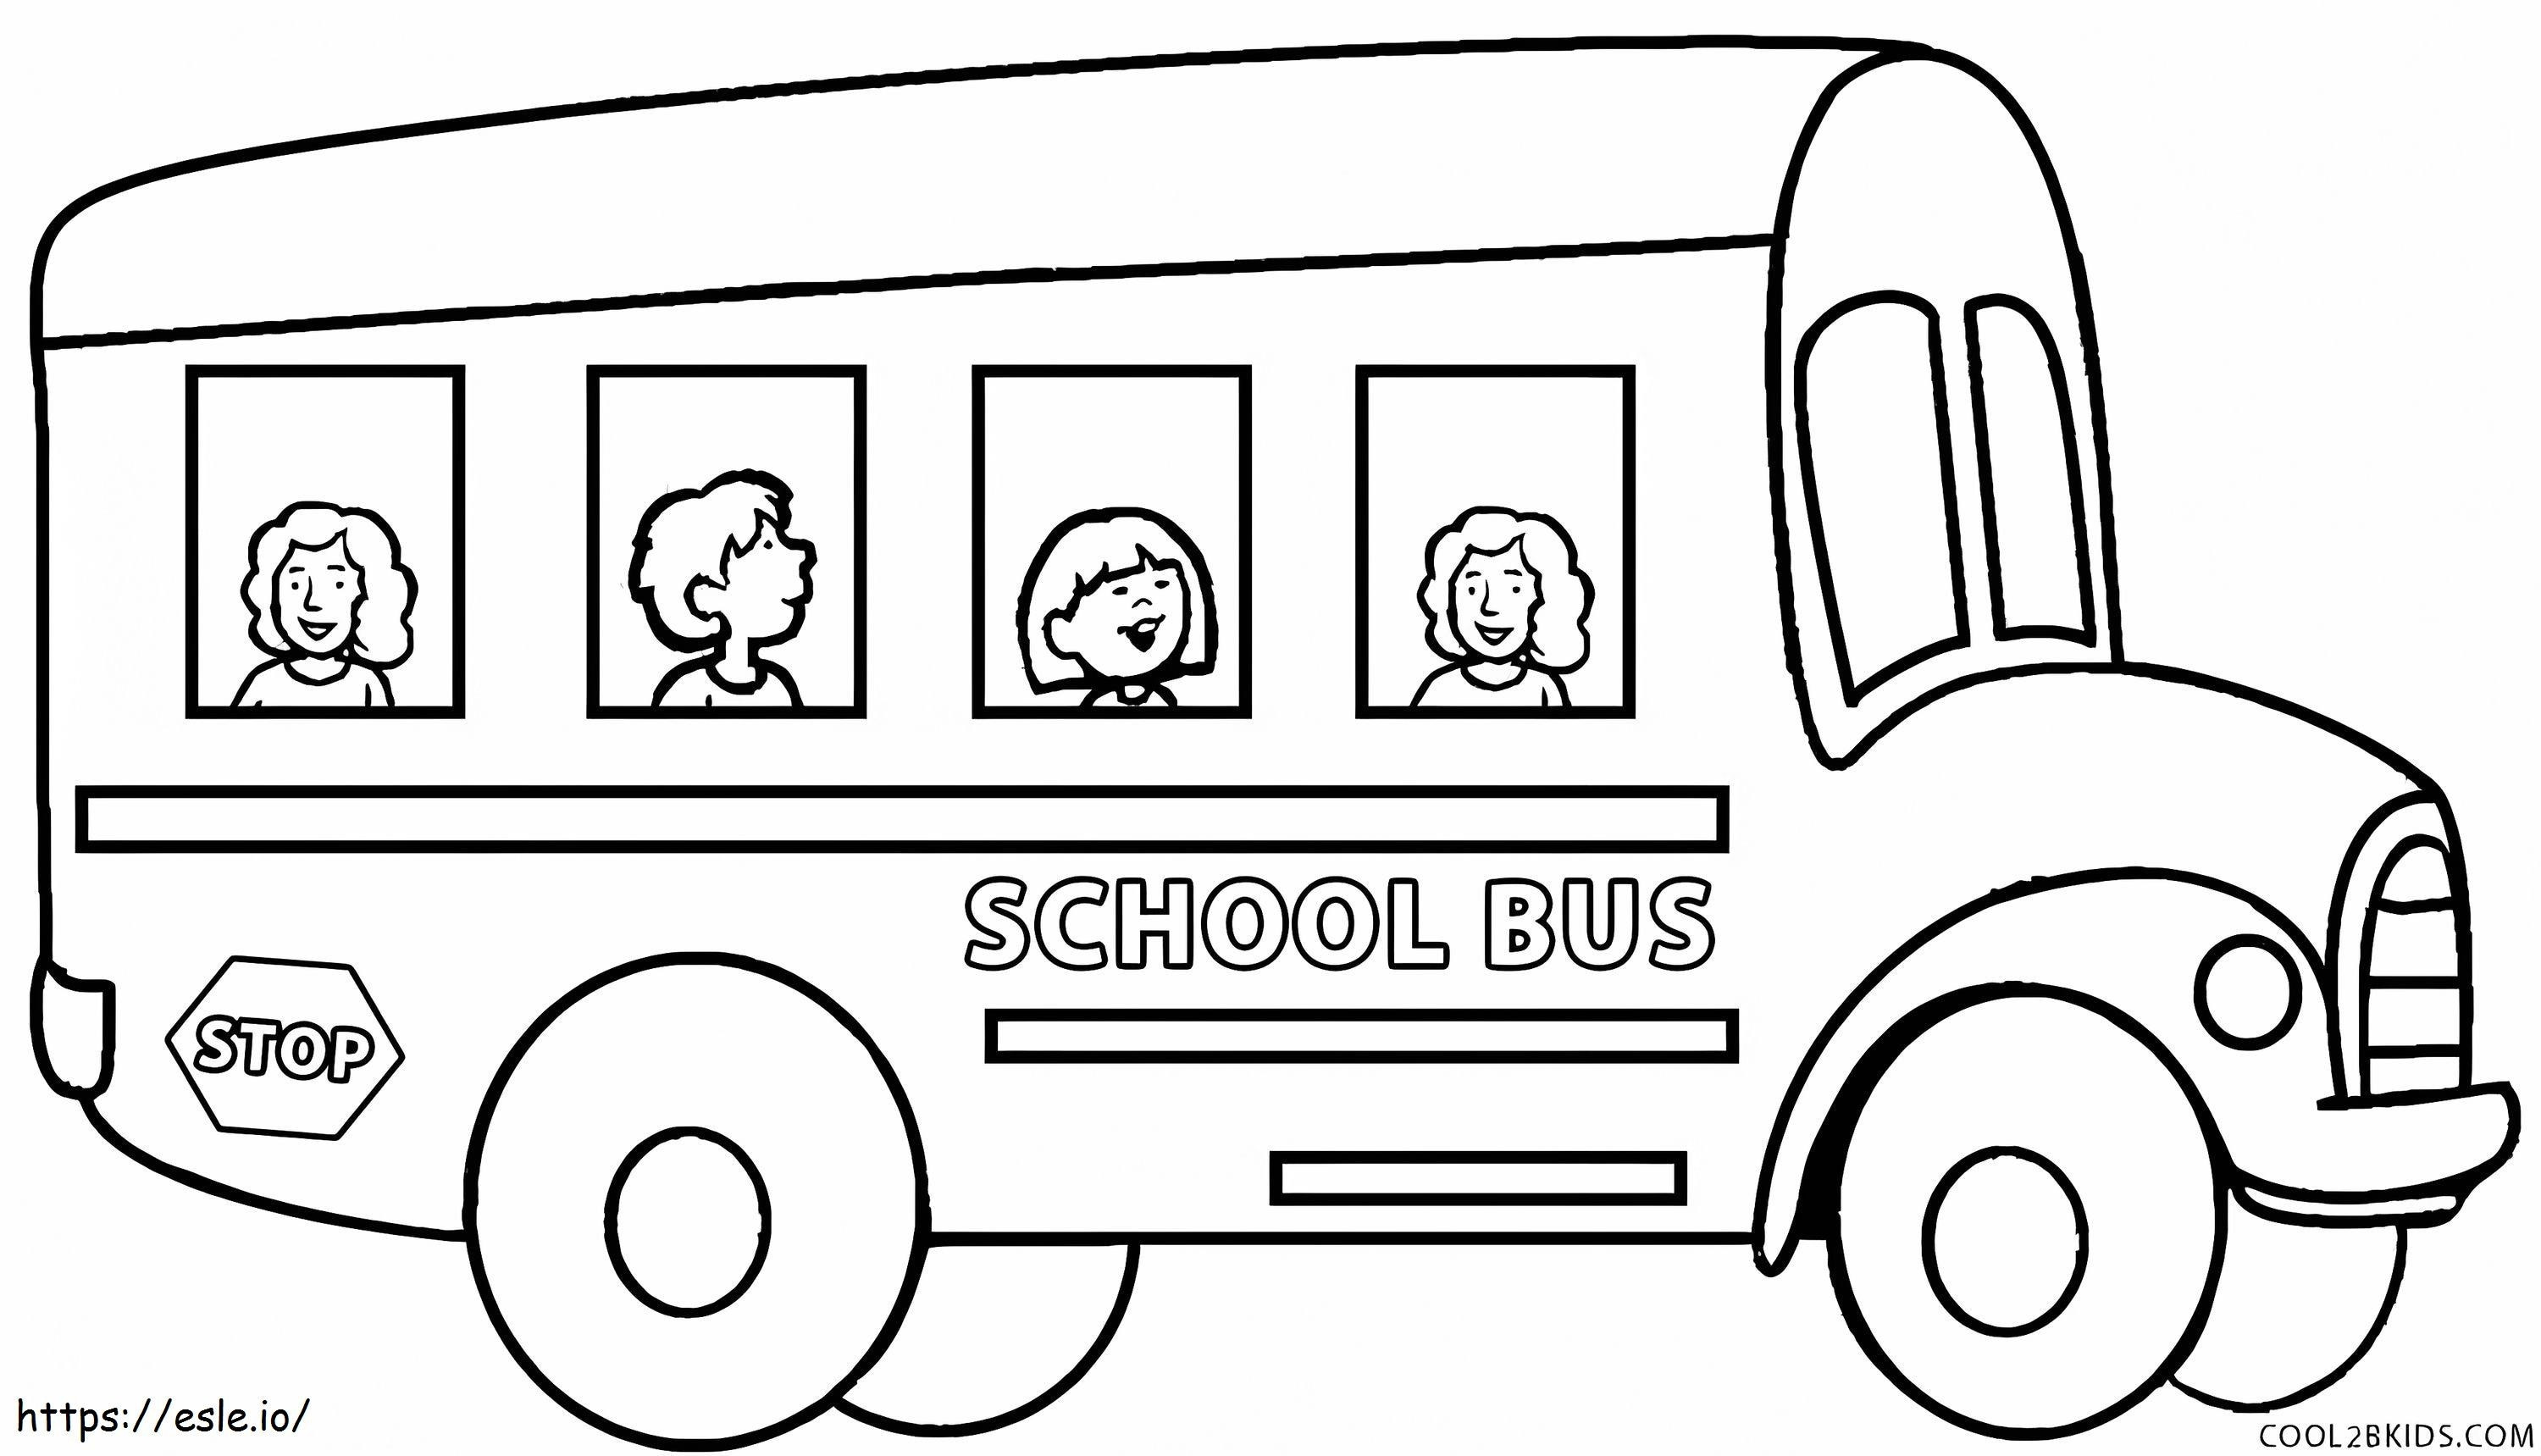 Quatro crianças no ônibus escolar para colorir